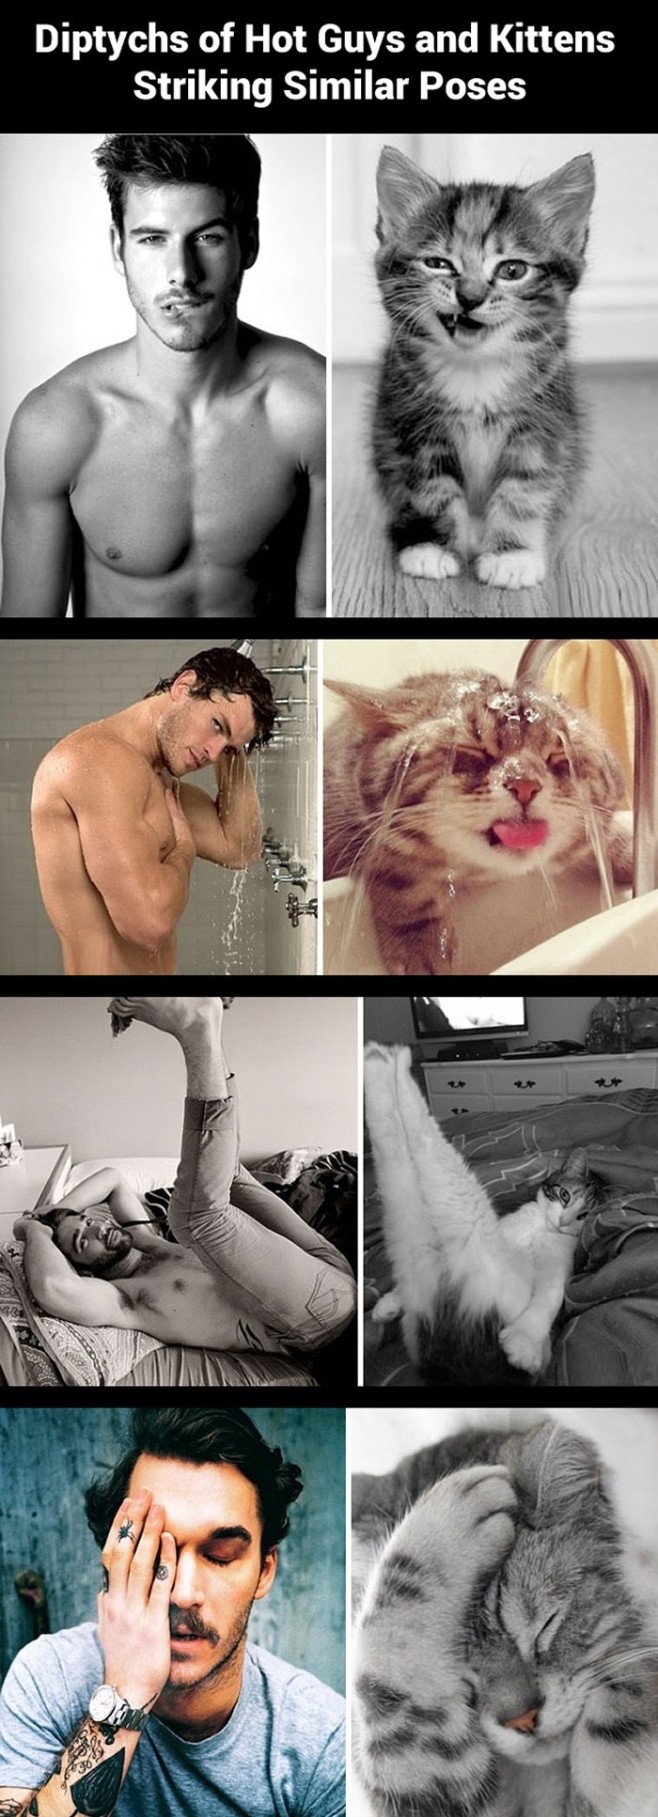 Hot guys and kitties striking similar posts...